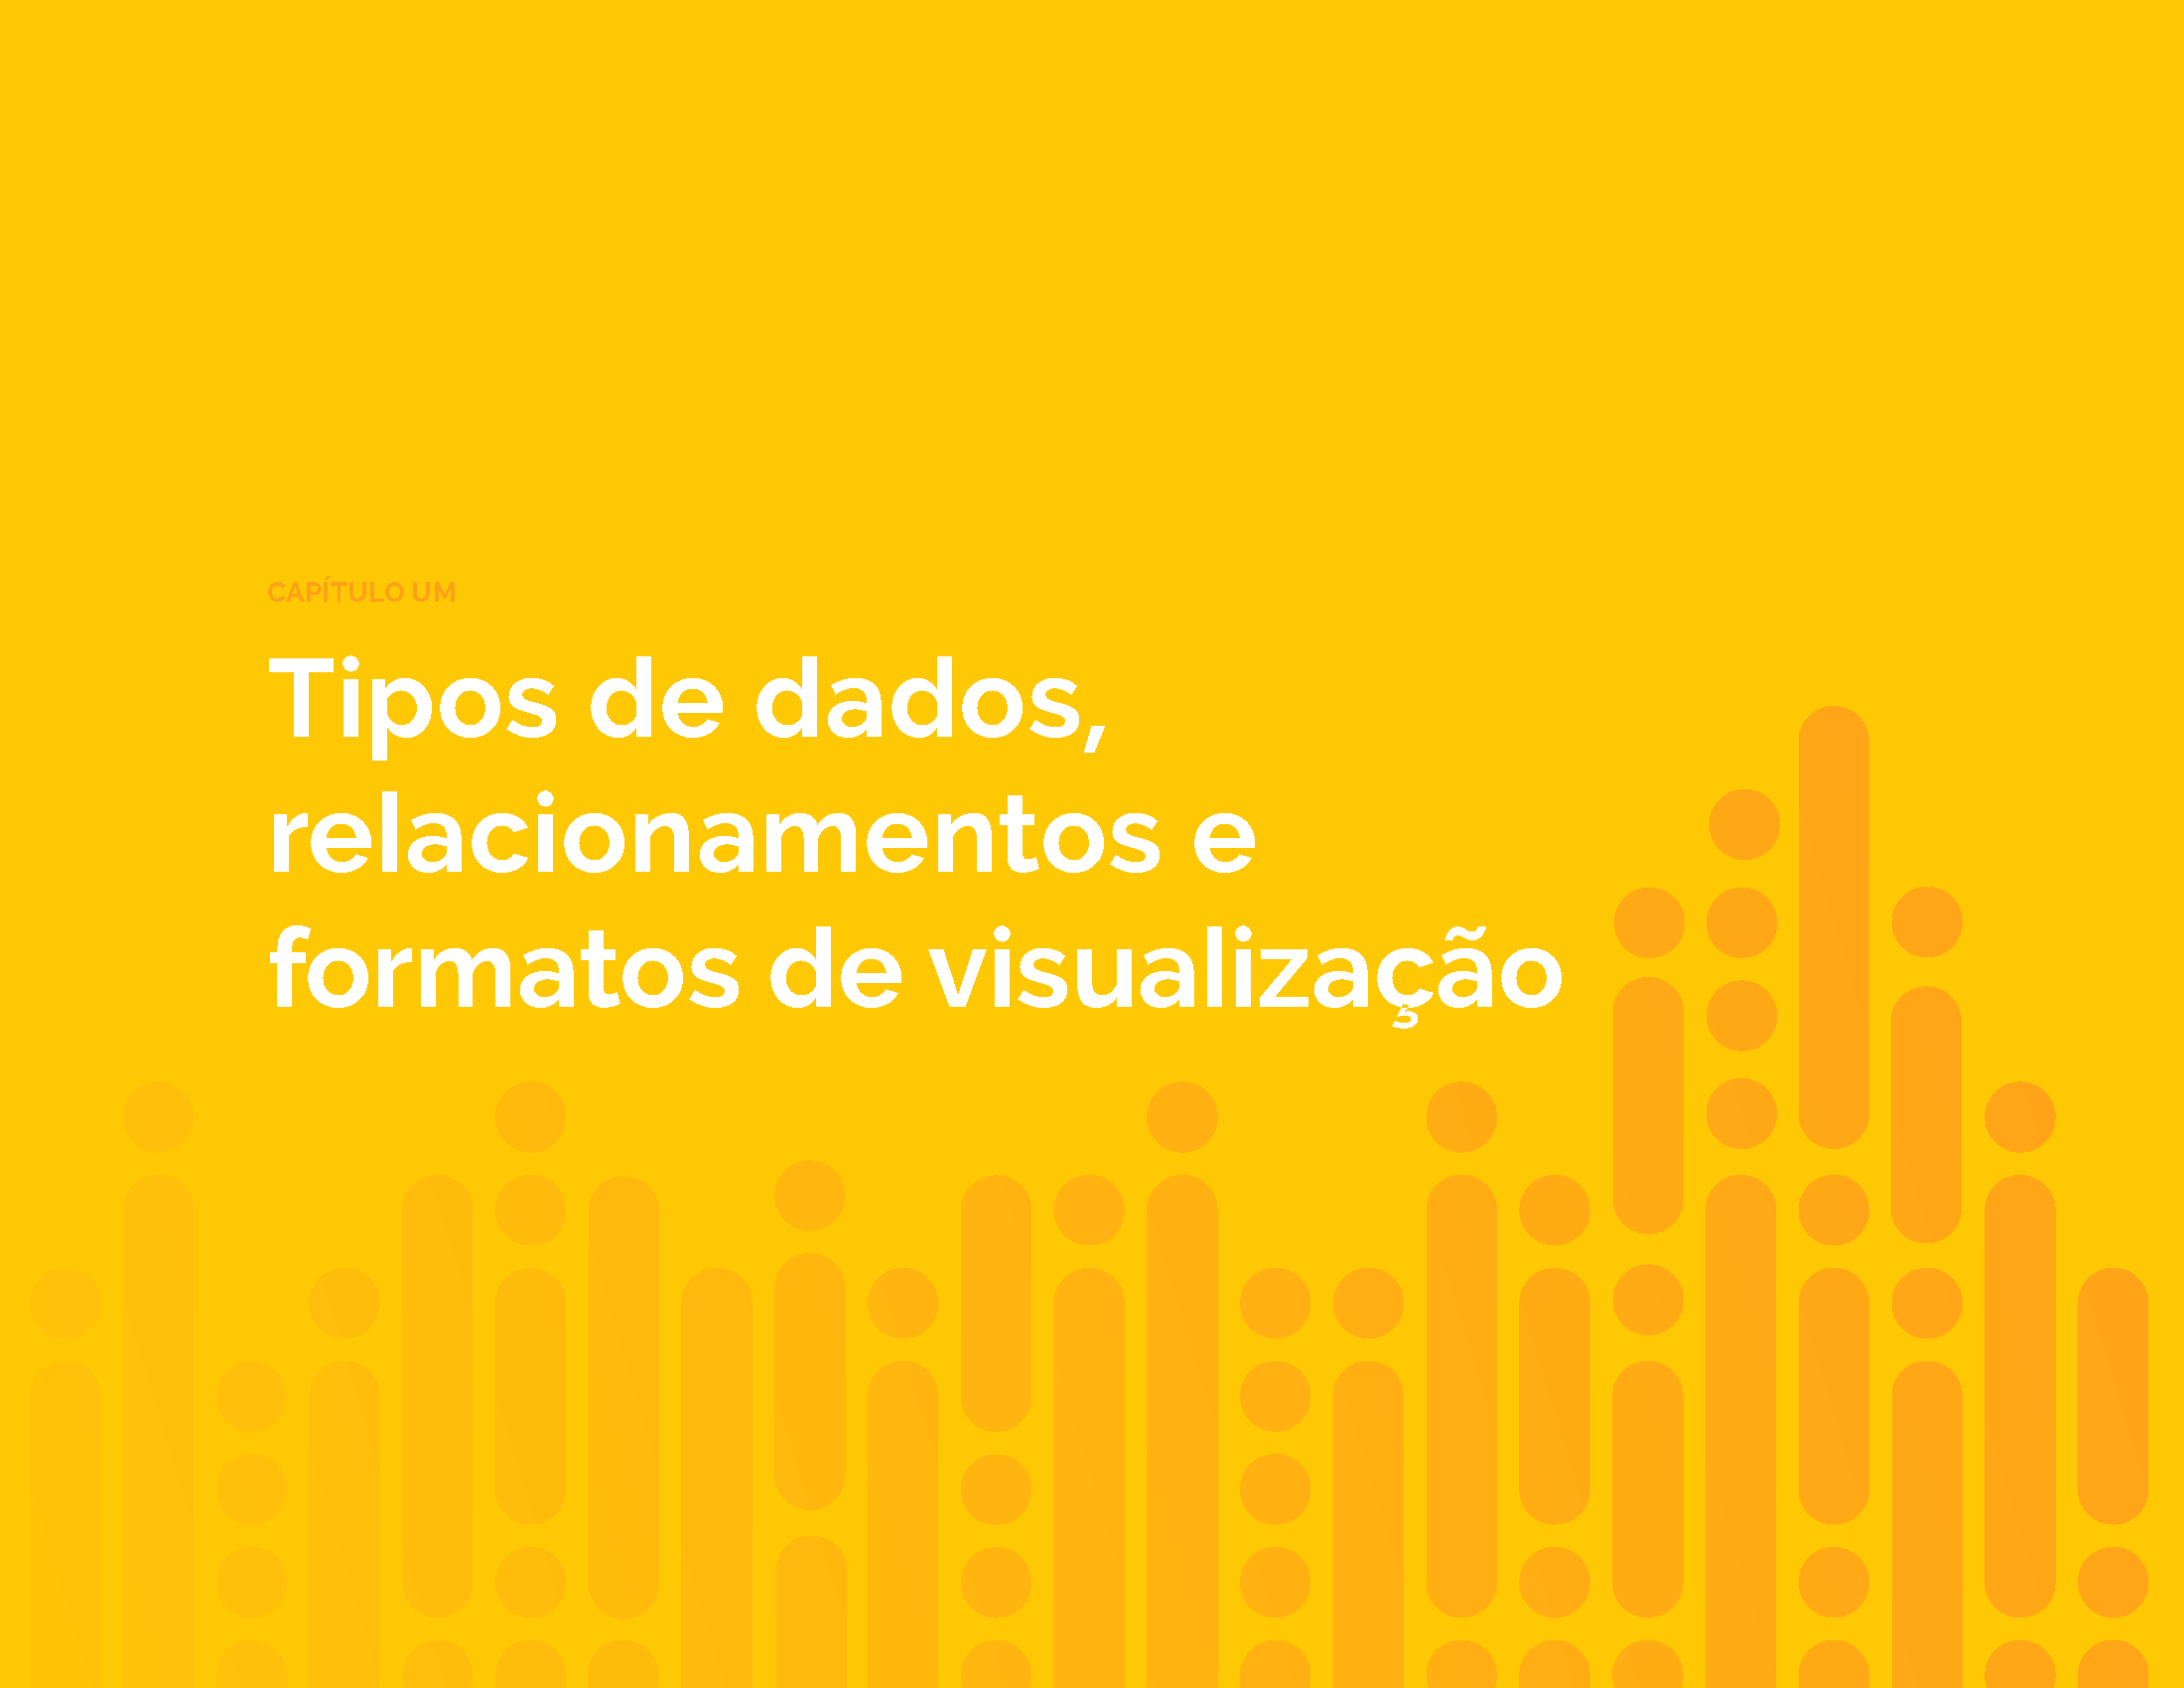 portugueseebook-presenting-data_Page_09